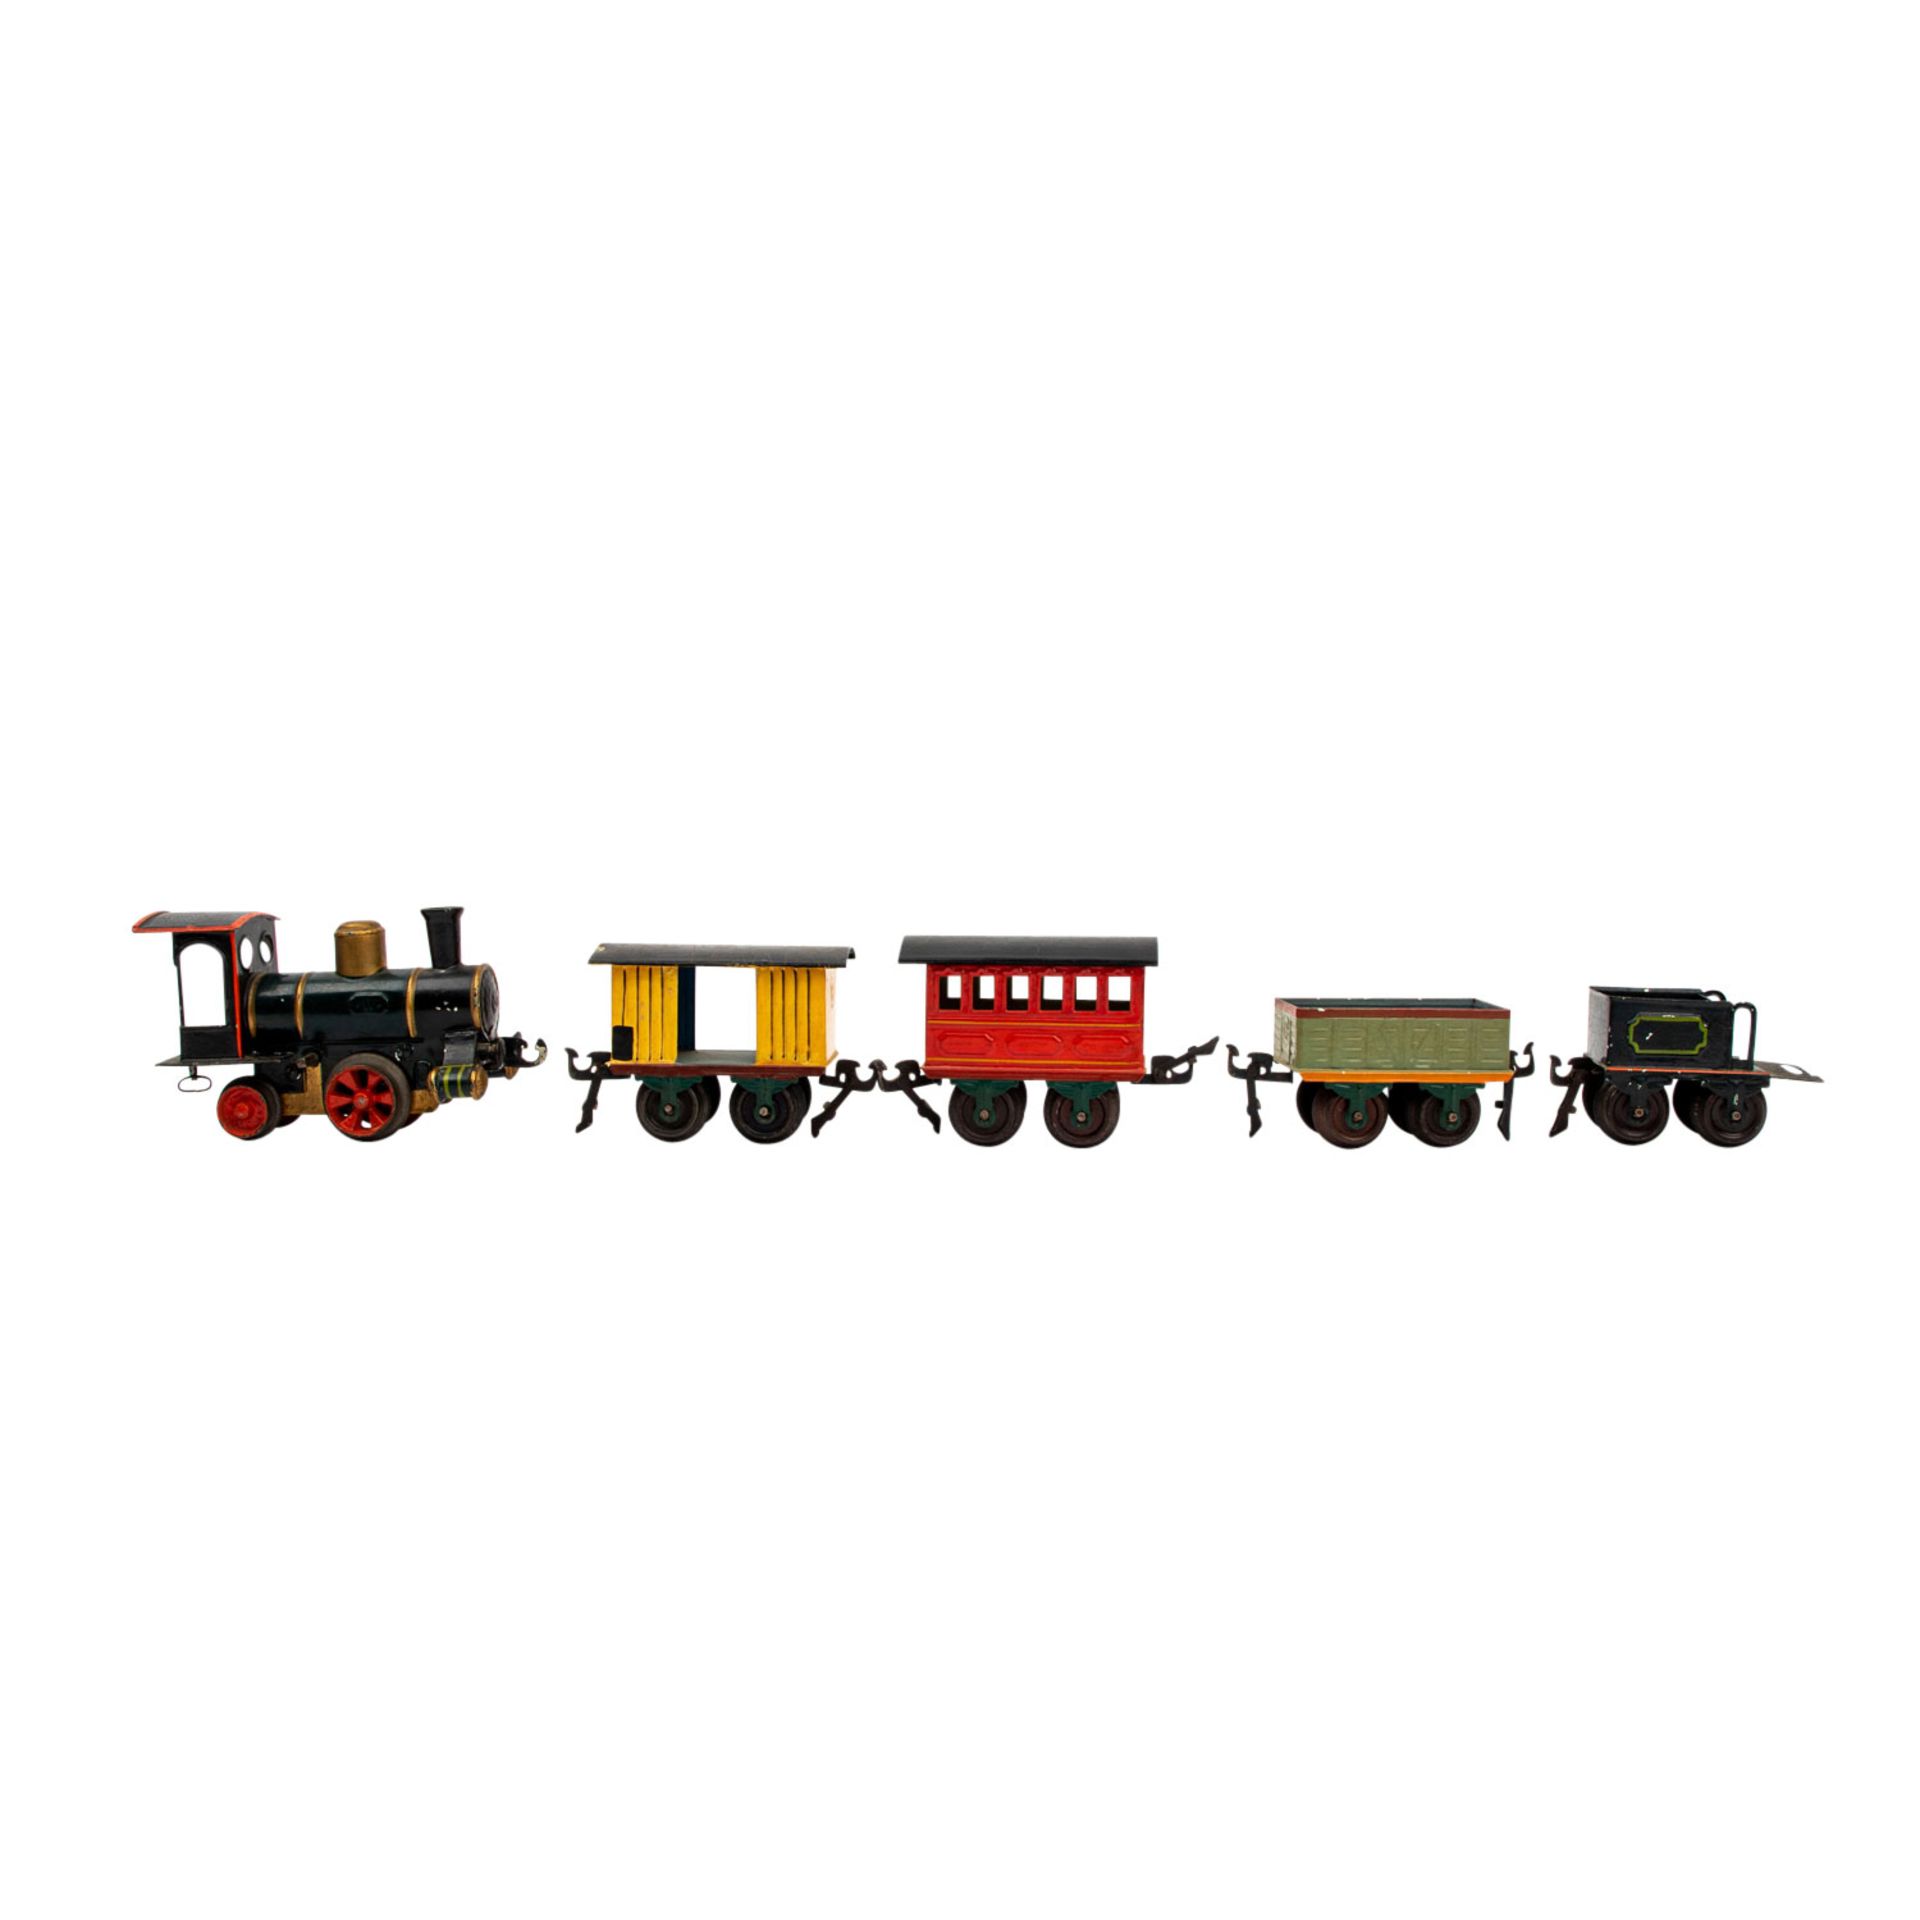 MÄRKLIN Uhrwerk-Dampflok mit Tender und 2 Güter- und 1 Personenwagen, Spur 0, wohl um 1900, - Bild 4 aus 7